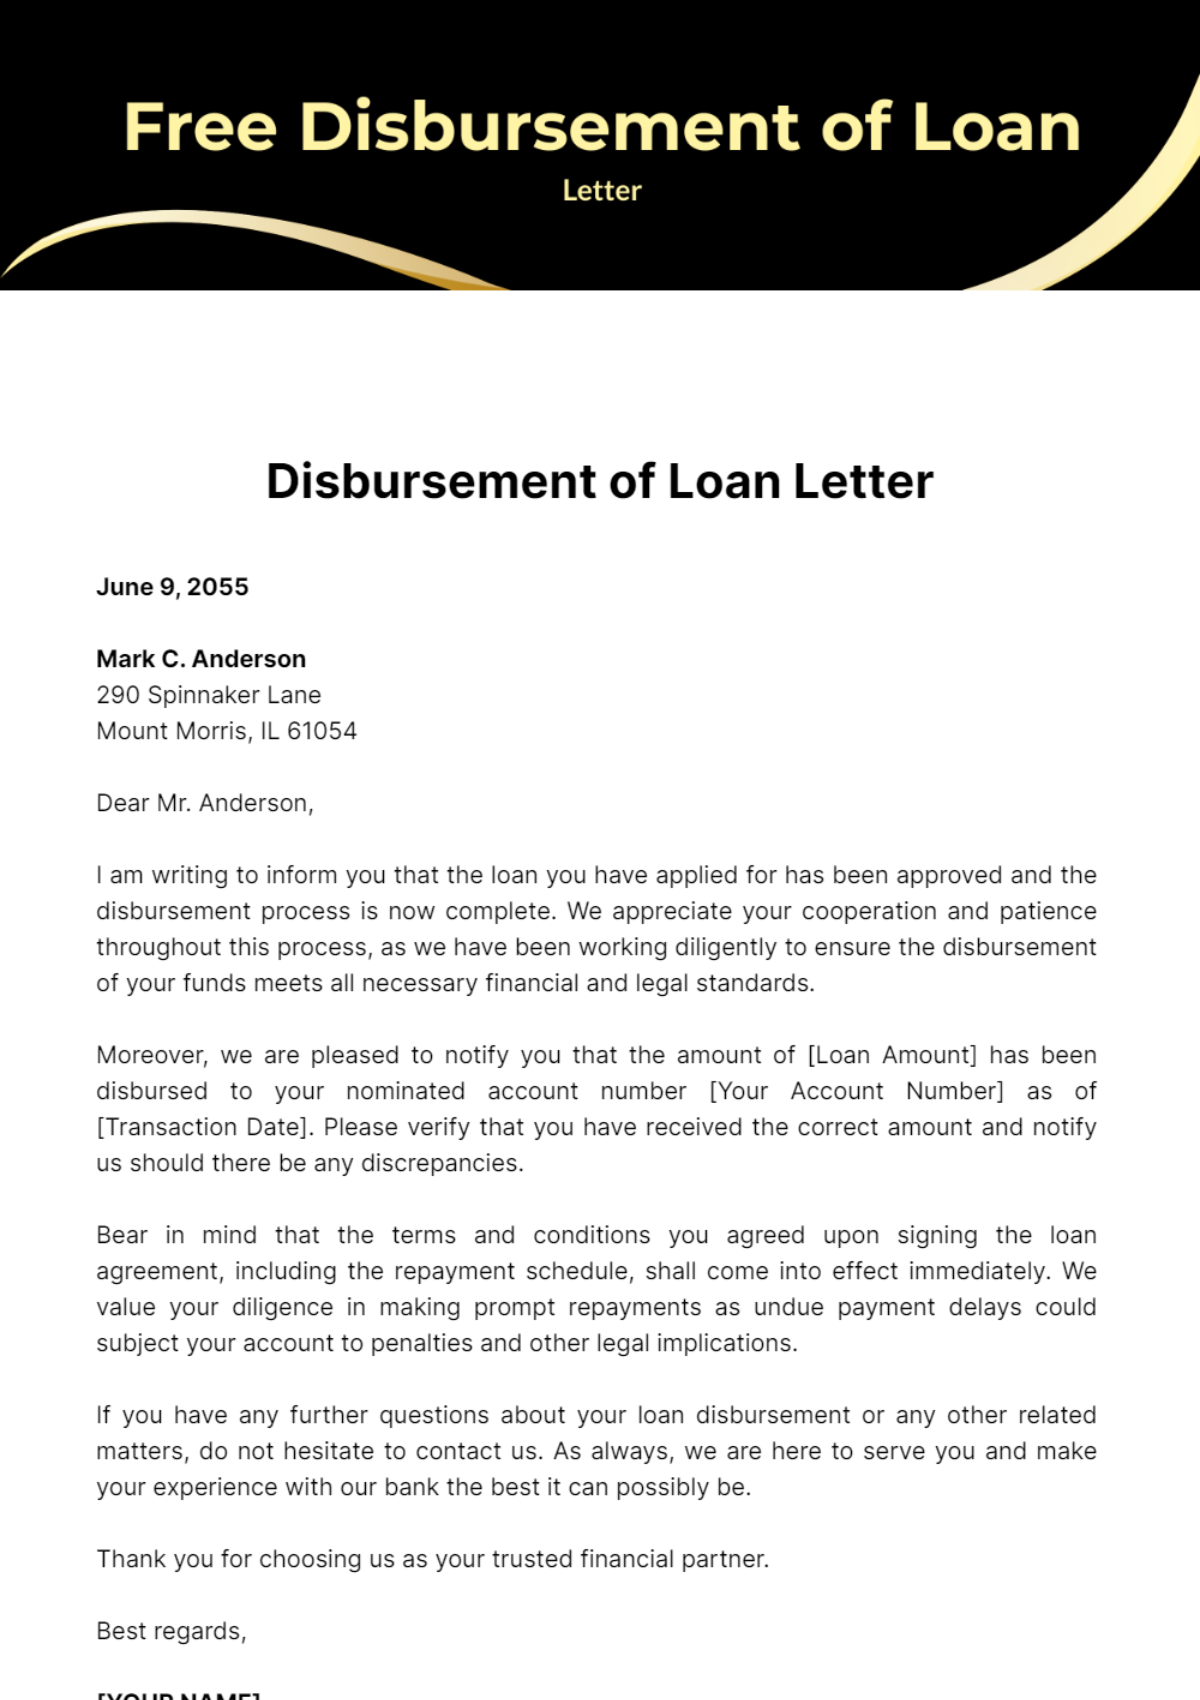 Free Disbursement of Loan Letter Template